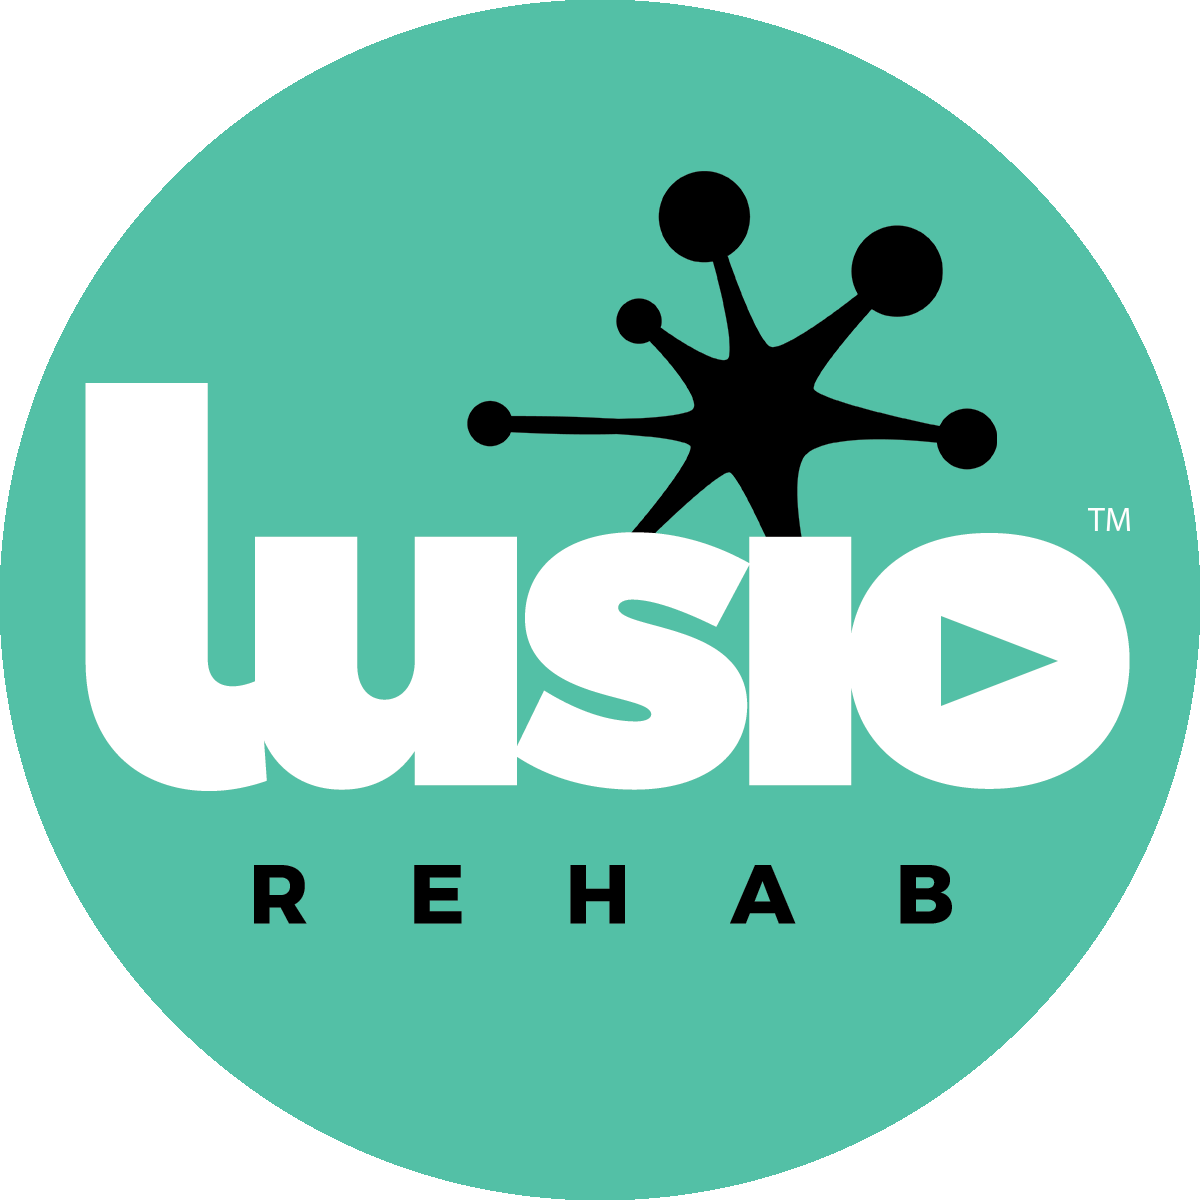 Lusio Rehab